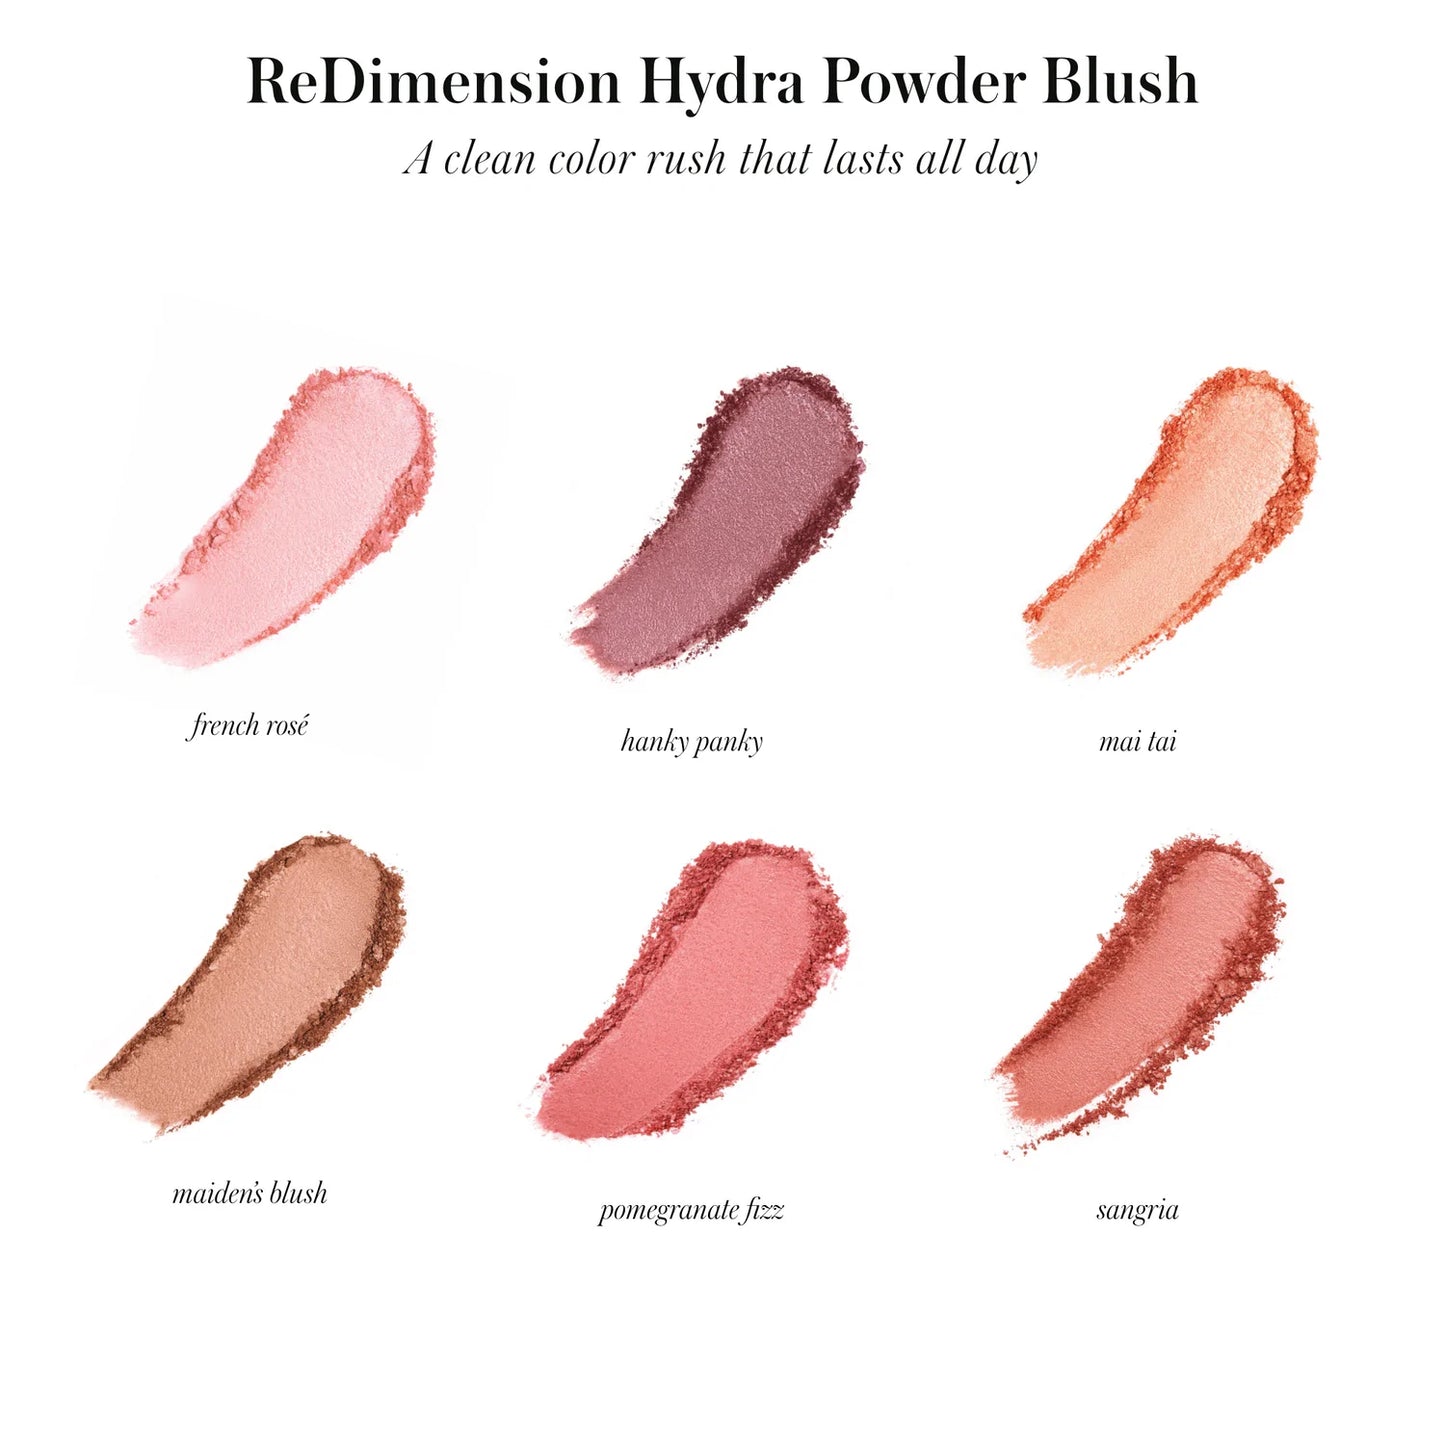 ReDimension Hydra Powder Blush